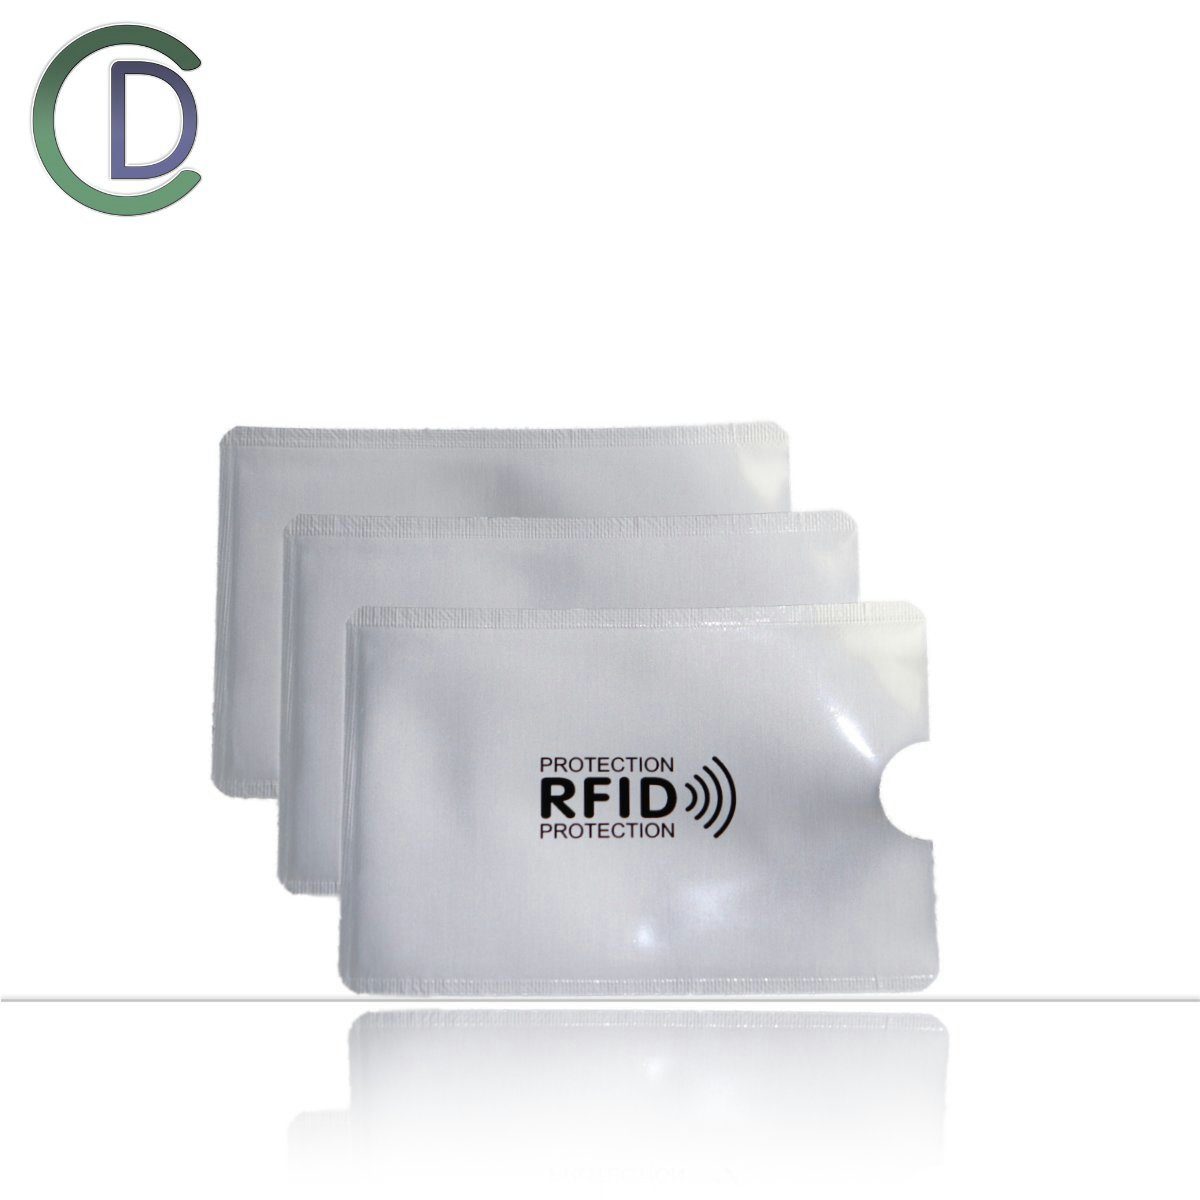 Burgstein Kartenetui RFID Blocker Karte NFC Schutz - Störsender